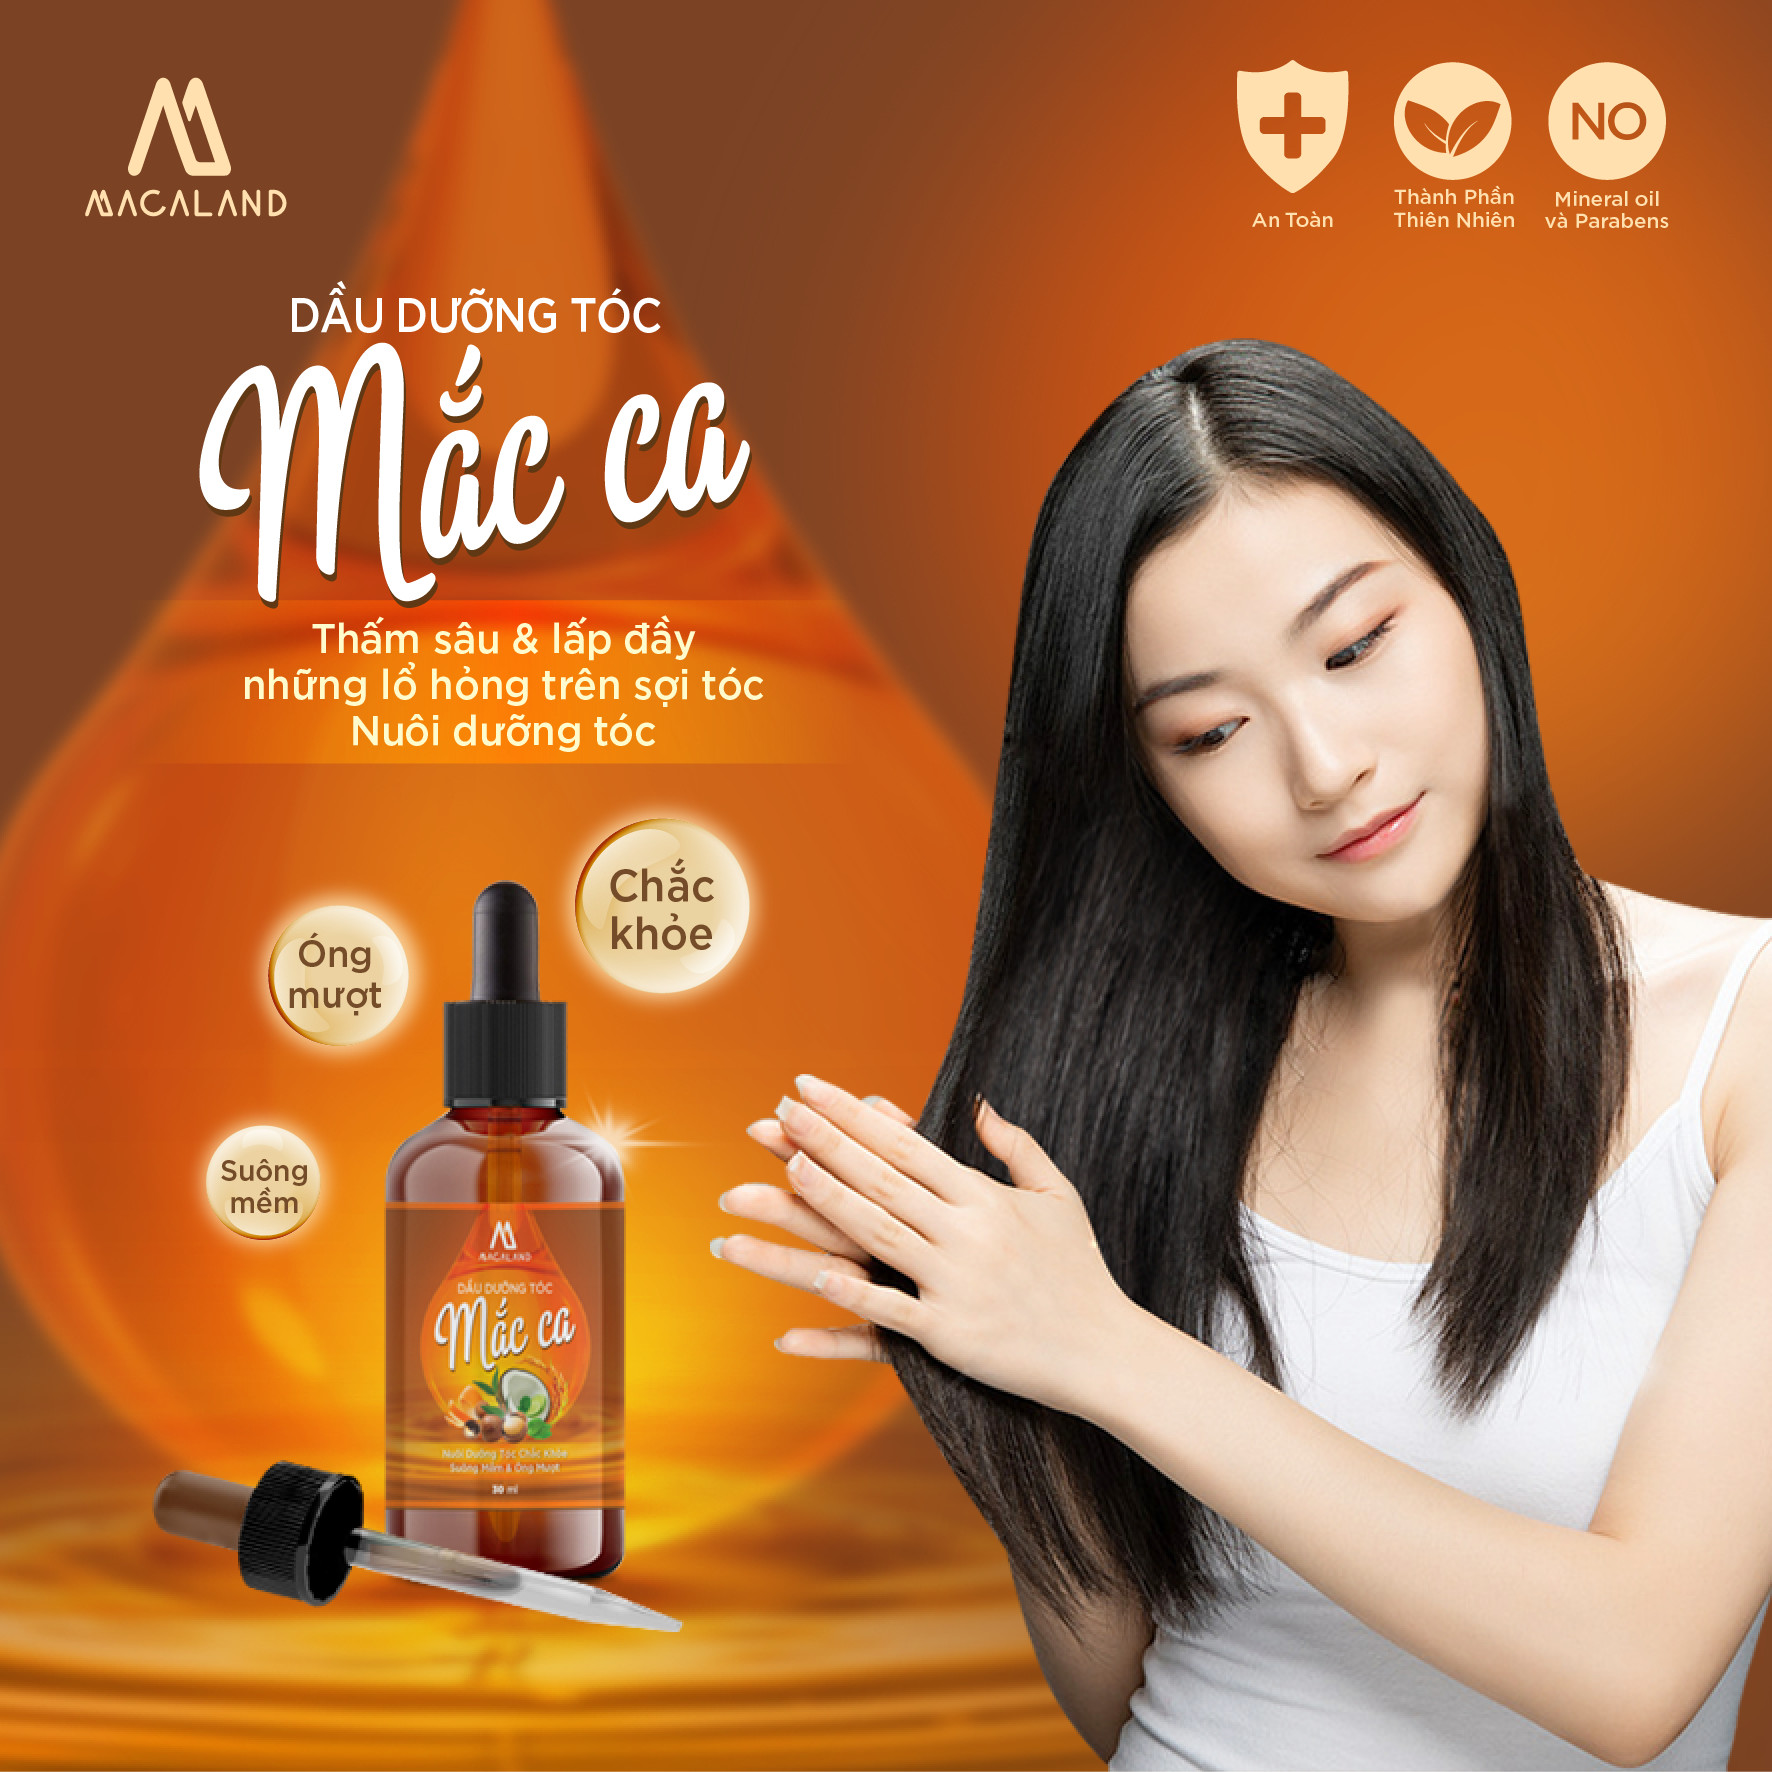 Dầu dưỡng tóc Macadamia, tinh dầu Bưởi 30ml Macaland nuôi dưỡng và phục hồi tóc hư tổn